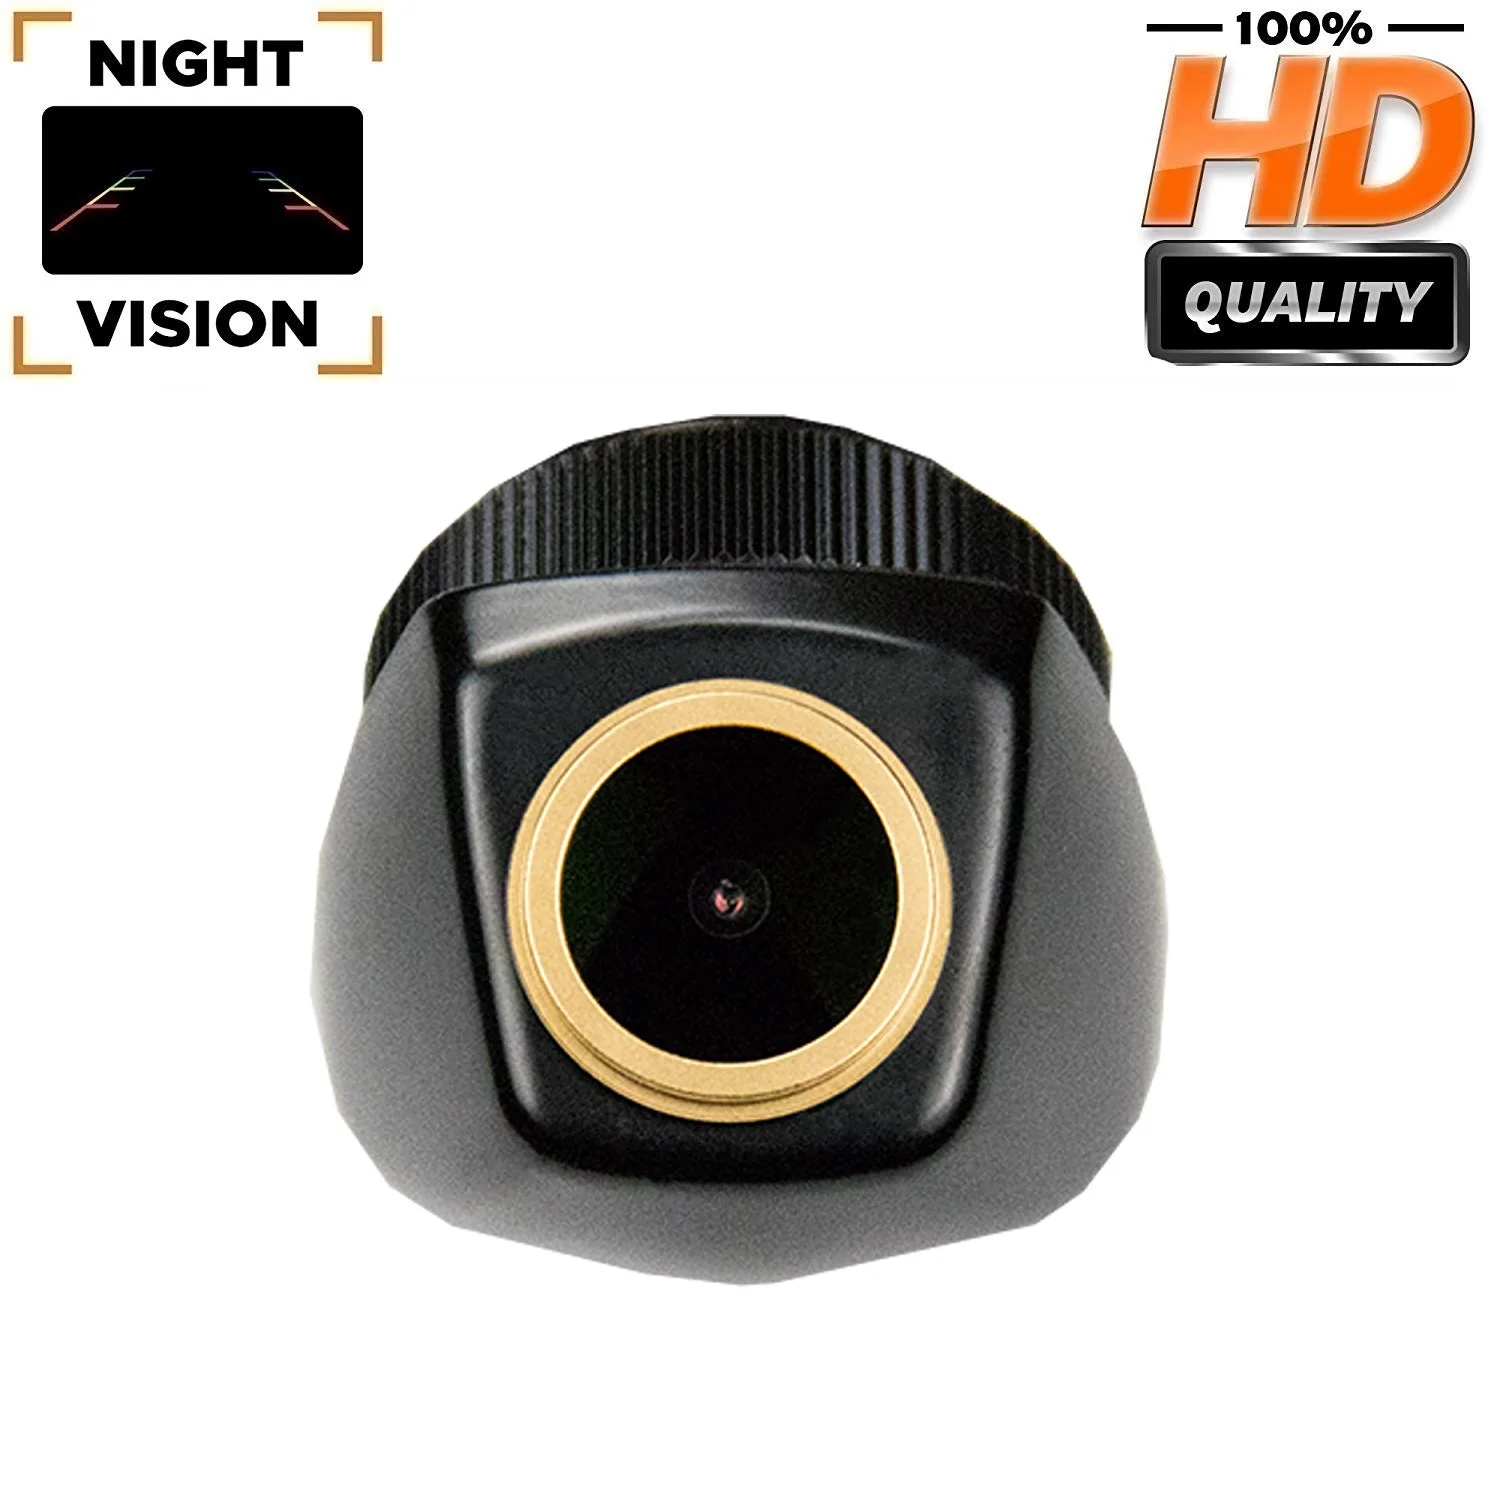 

HD 1280*720p Rear View Backup Camera for BMW X5 E53 E70 X3 E83 X6 E71 E72, Original Reverse Hole Camera Night Vision Camera